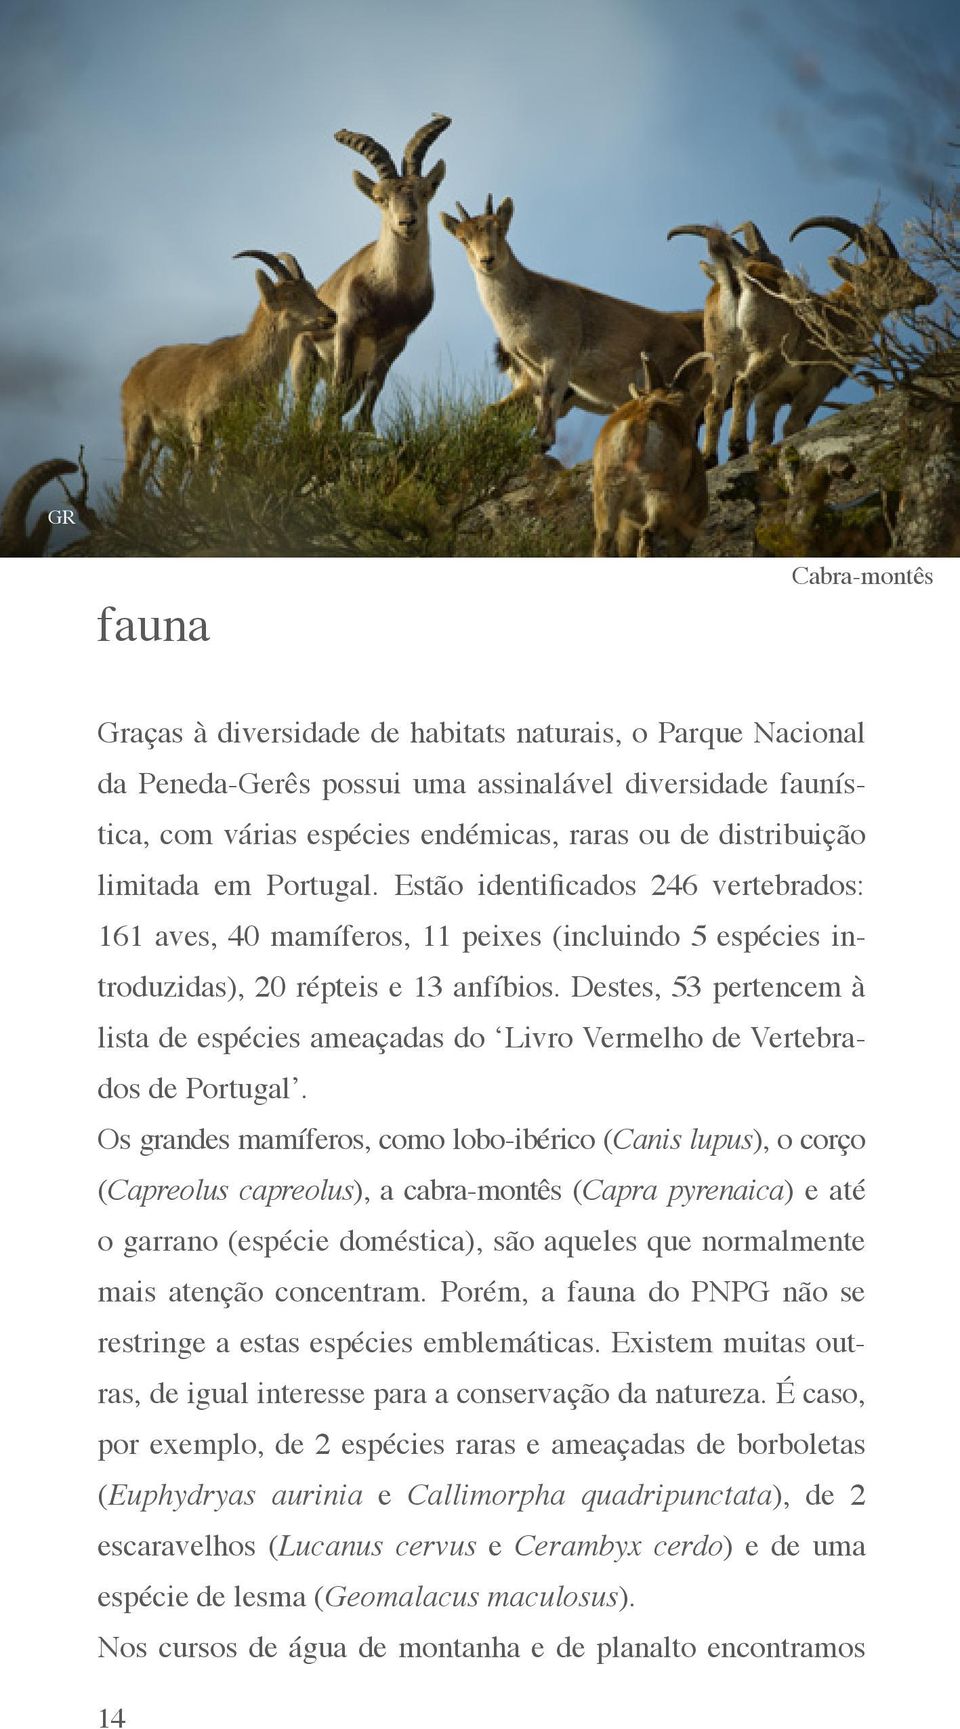 Destes, 53 pertencem à lista de espécies ameaçadas do Livro Vermelho de Vertebrados de Portugal.